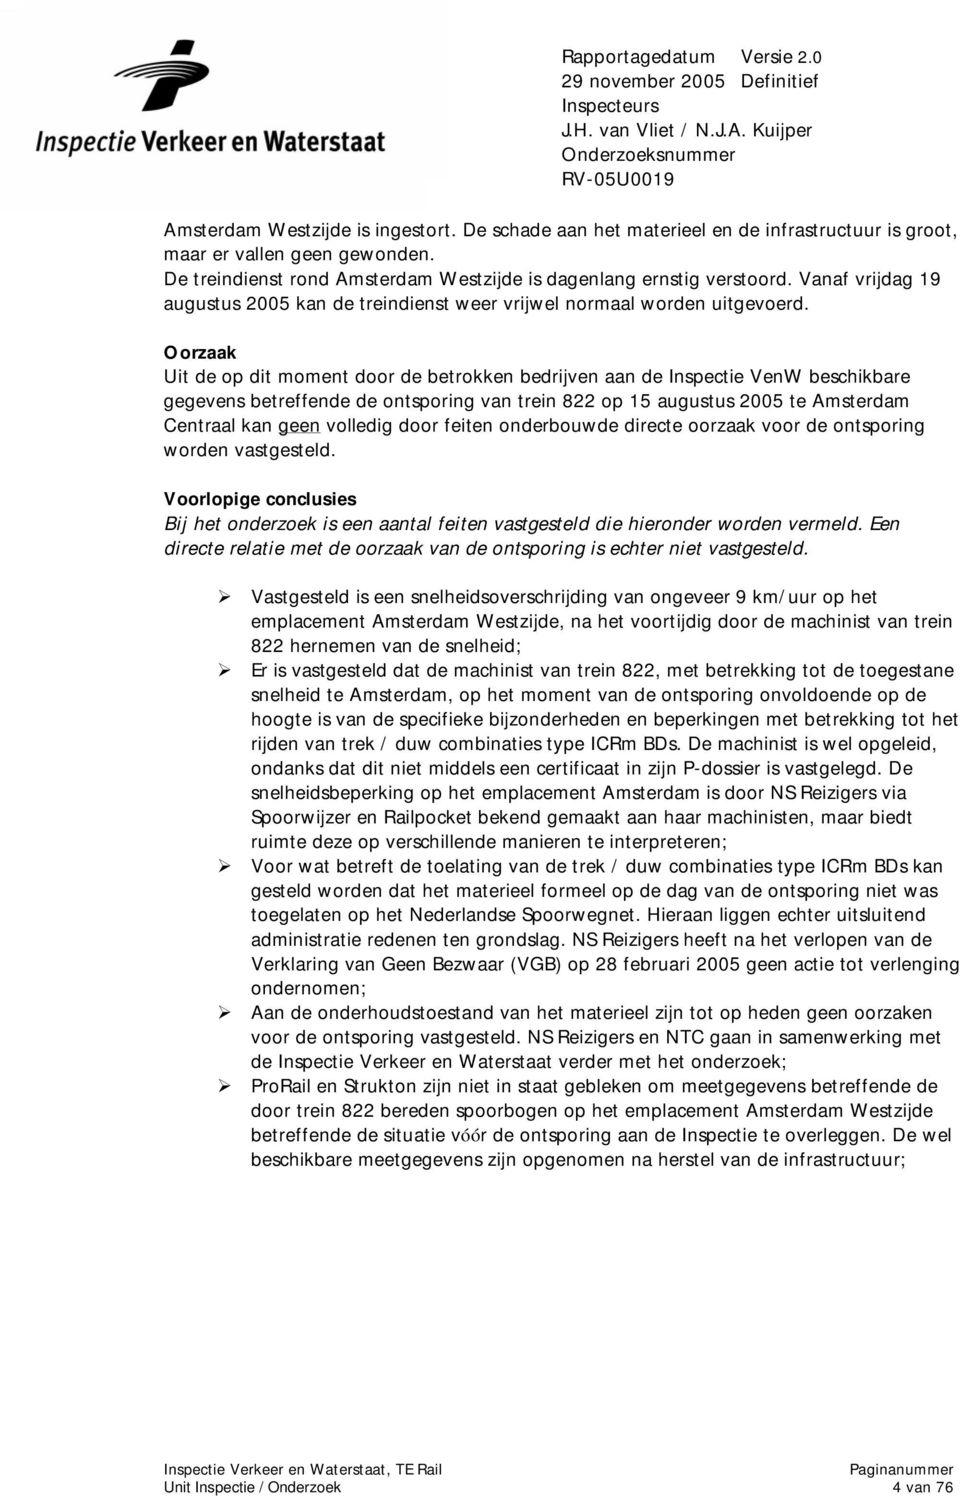 Oorzaak Uit de op dit moment door de betrokken bedrijven aan de Inspectie VenW beschikbare gegevens betreffende de ontsporing van trein 822 op 15 augustus 2005 te Amsterdam Centraal kan geen volledig